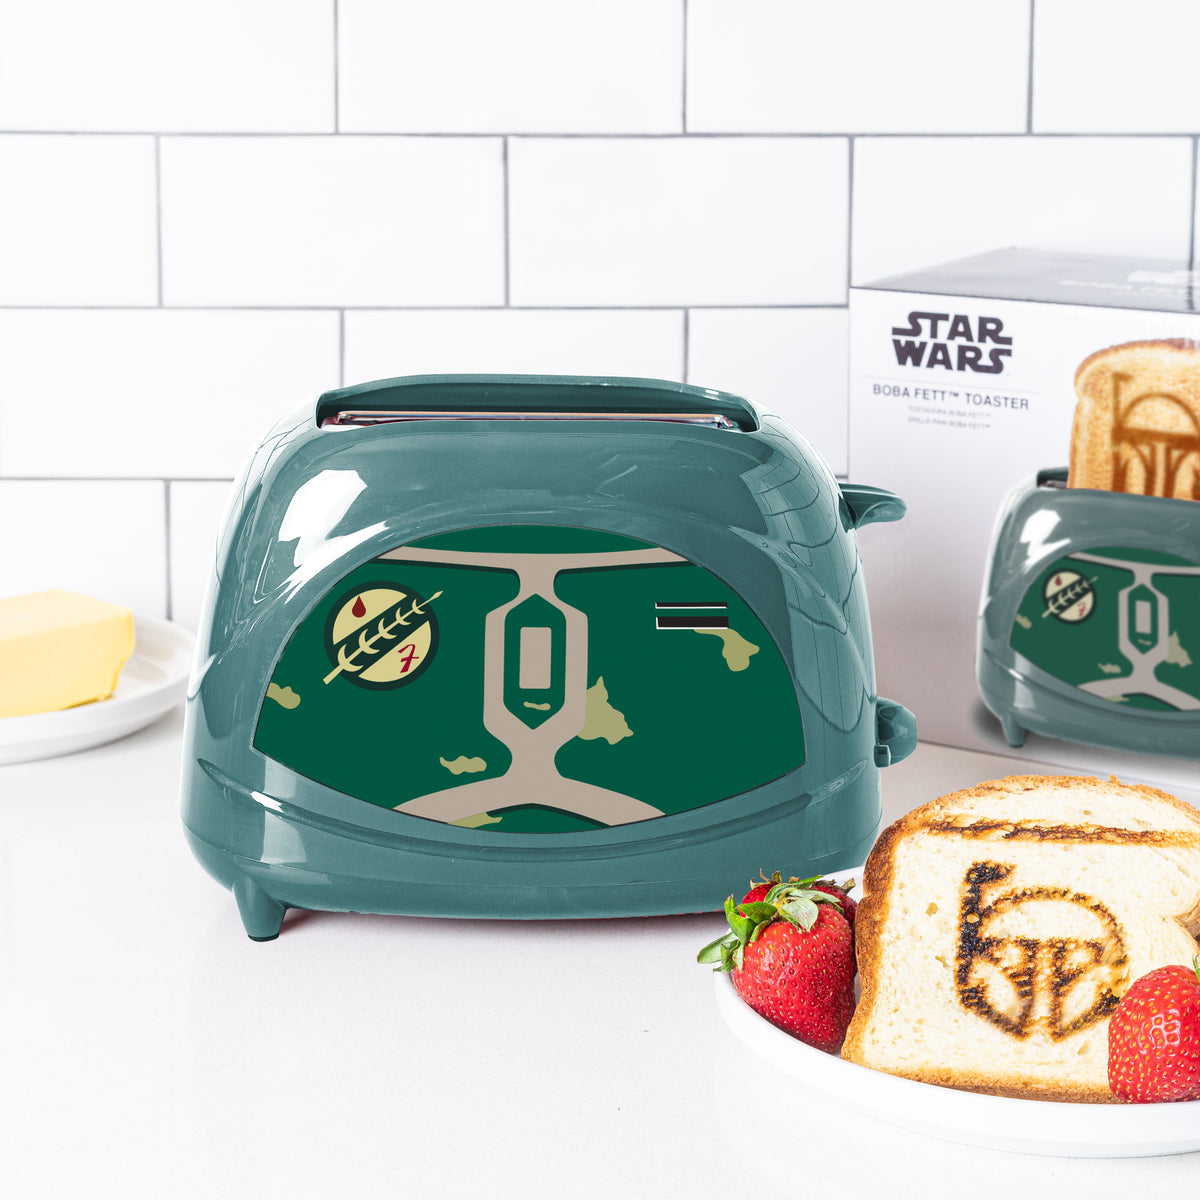 Star Wars Boba Fett Toaster